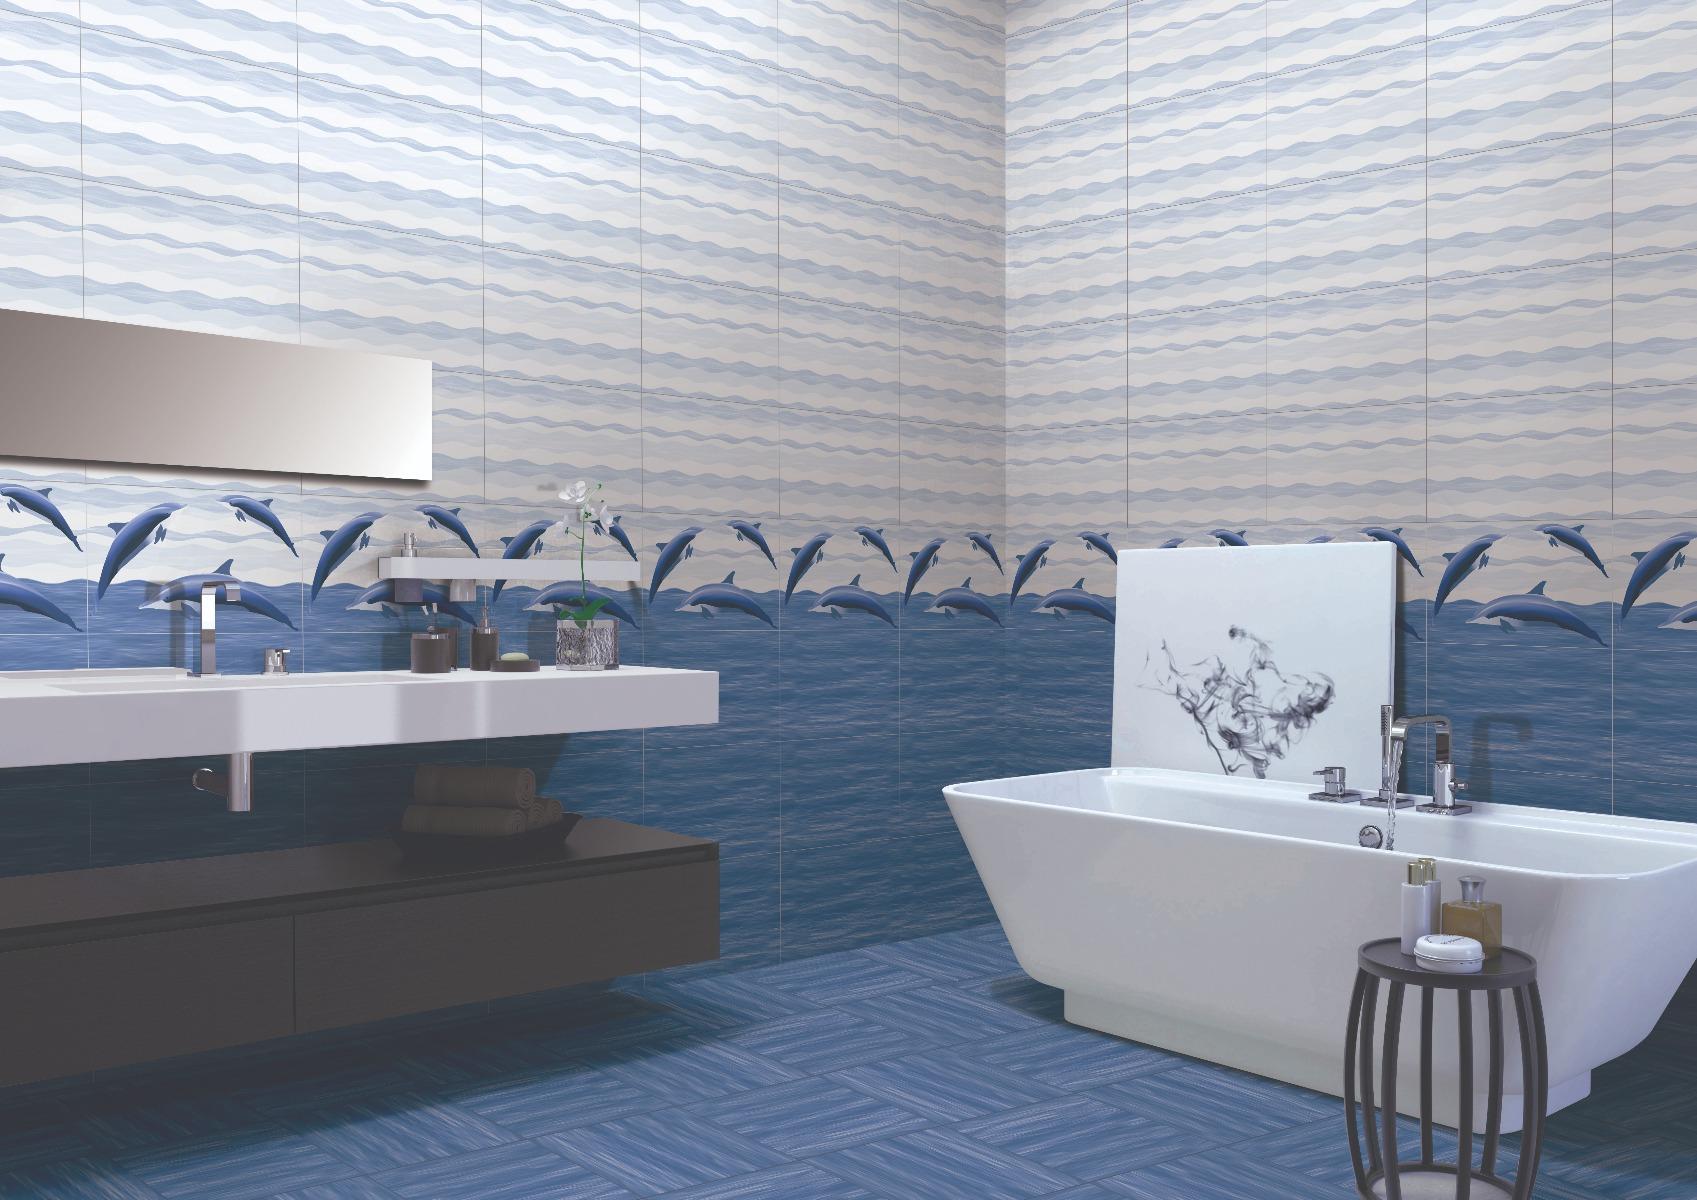 Highlighter Tiles for Bathroom Tiles